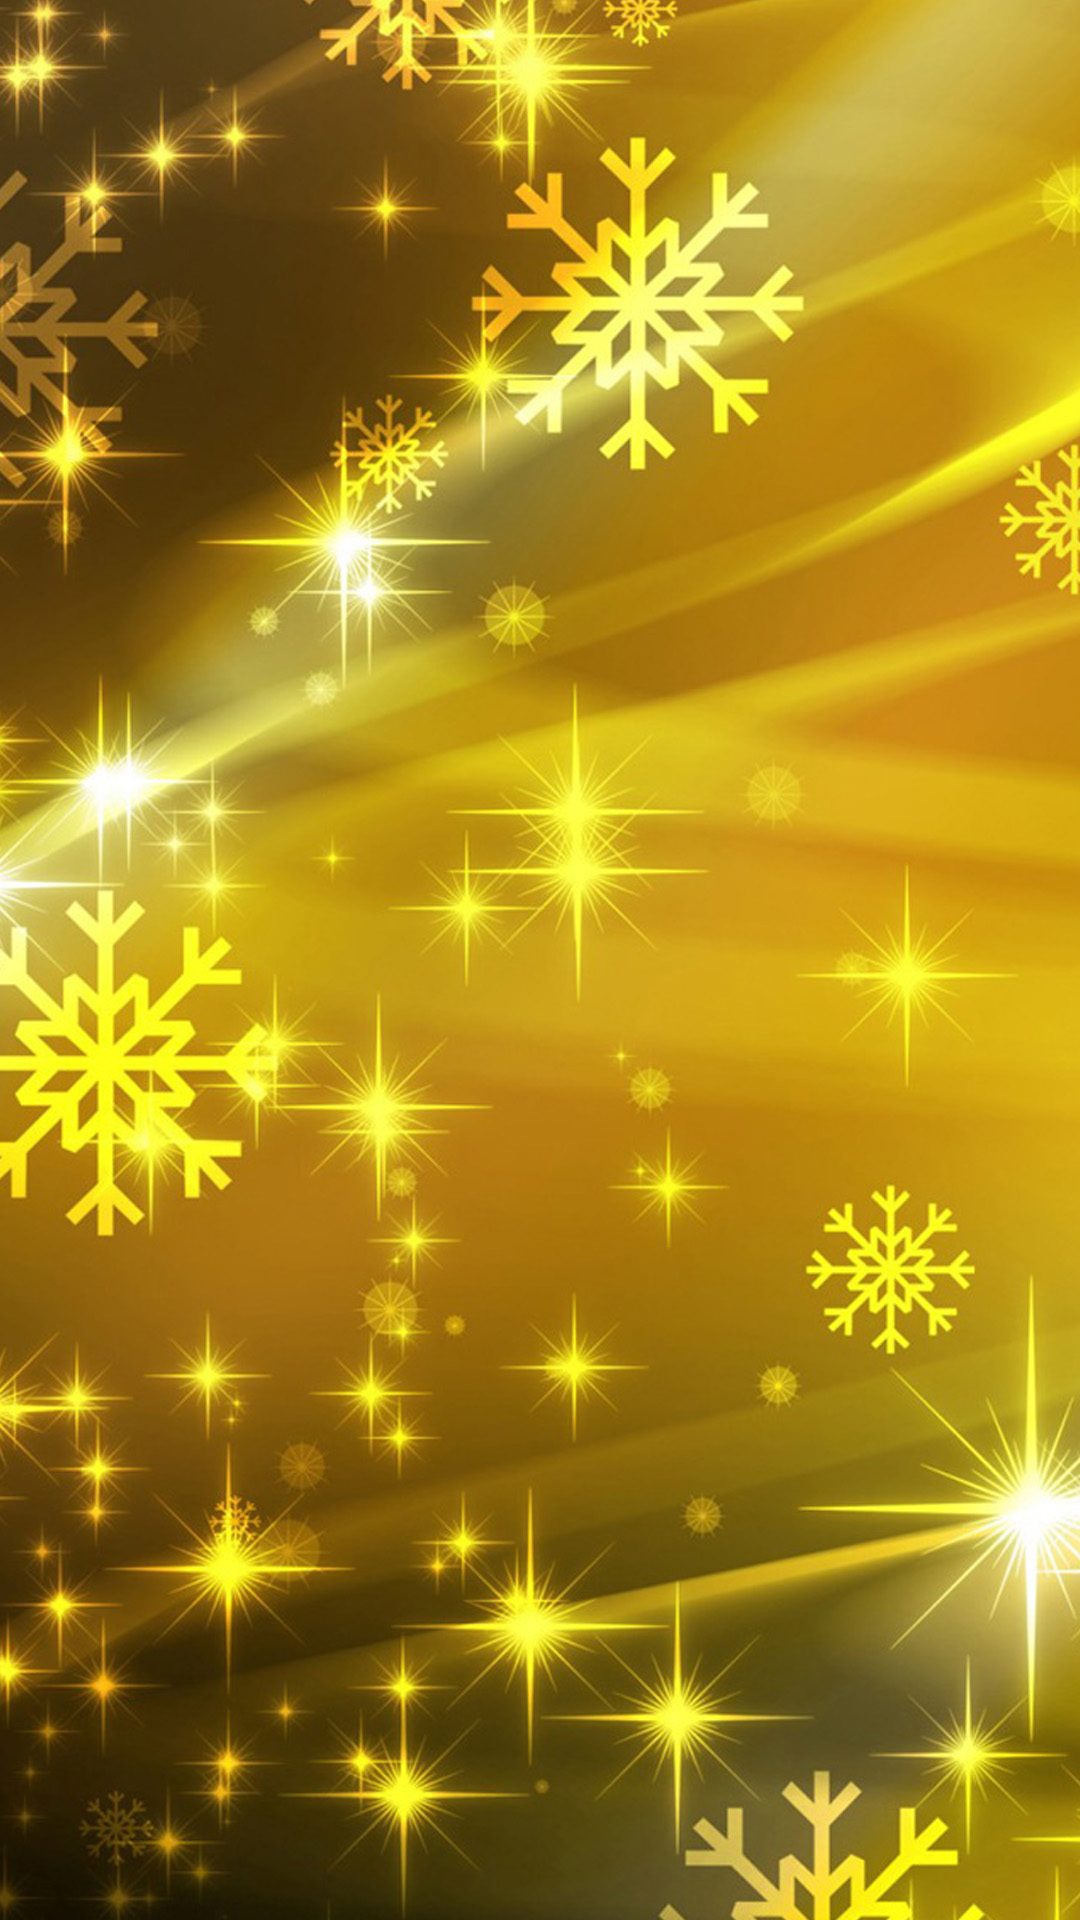 안드로이드를위한 화려한 벽지,빛,노랑,금,무늬,크리스마스 장식